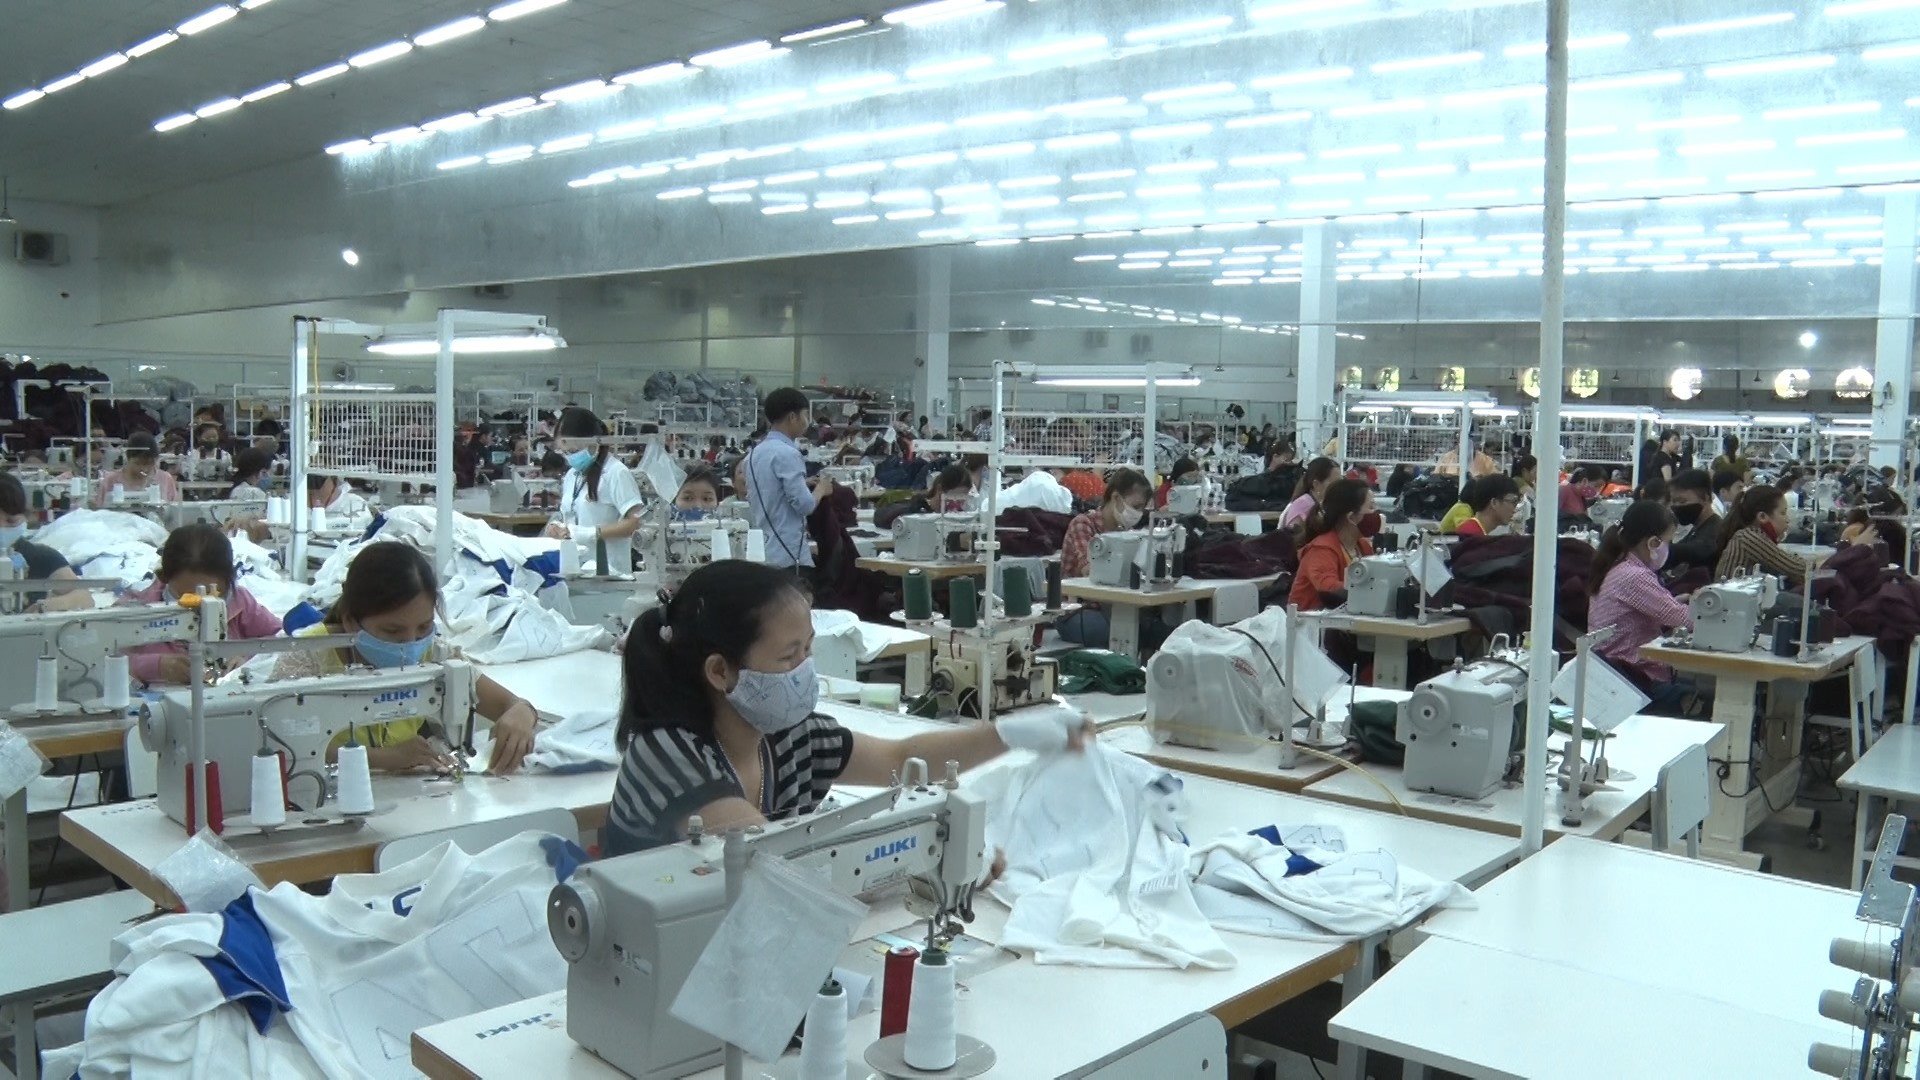 Toàn huyện Phú Ninh có 5.712 cơ sở ở nhóm sản xuất, kinh doanh, tăng 448 cơ sở so với năm 2017. Ảnh: Đ.C